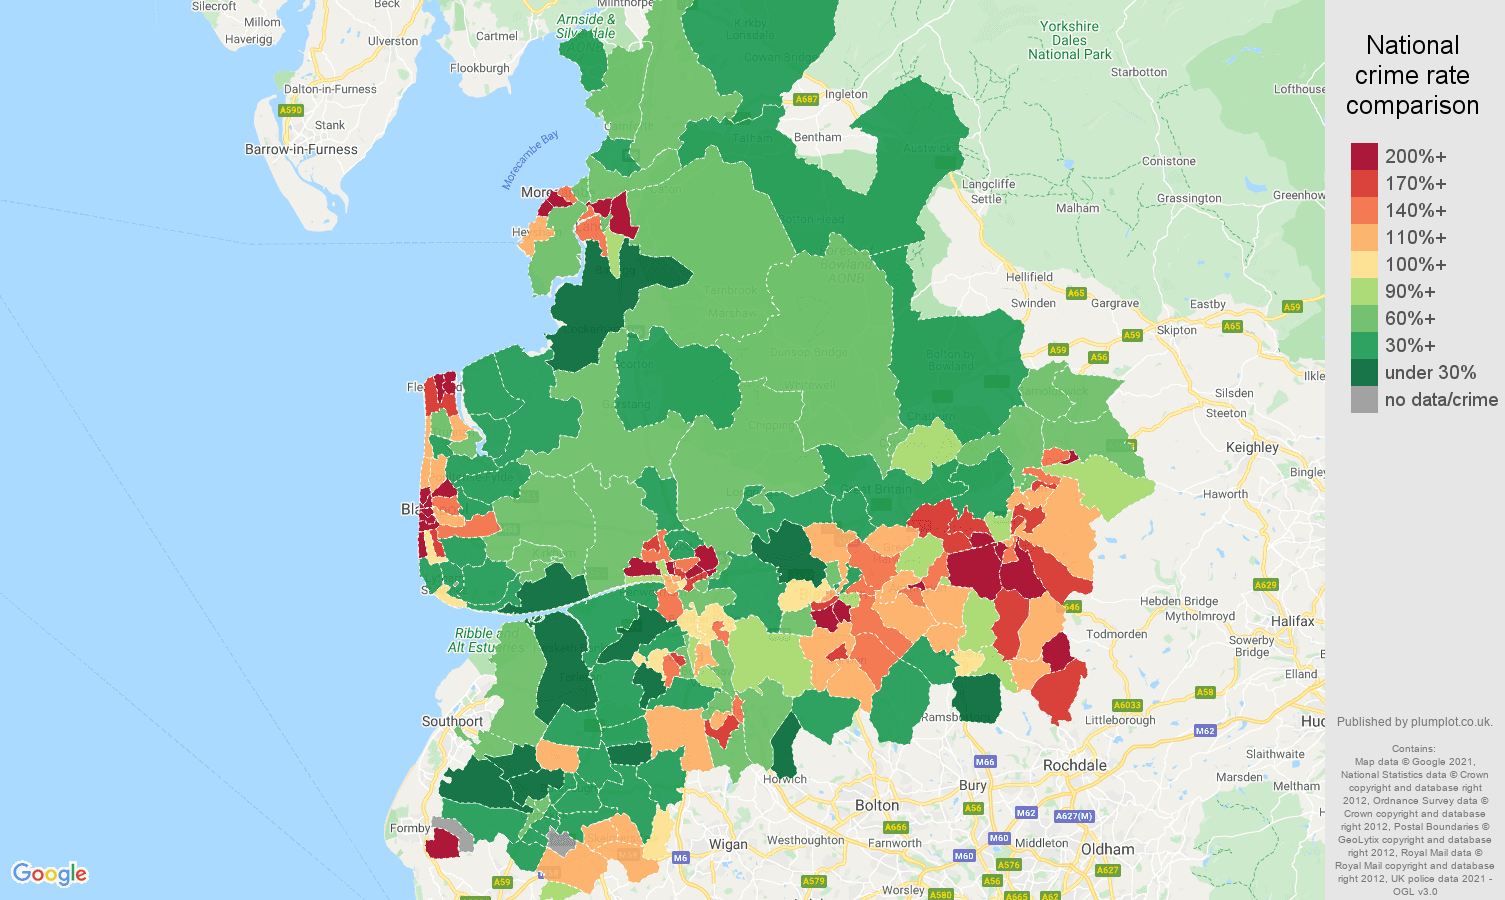 Lancashire criminal damage and arson crime rate comparison map